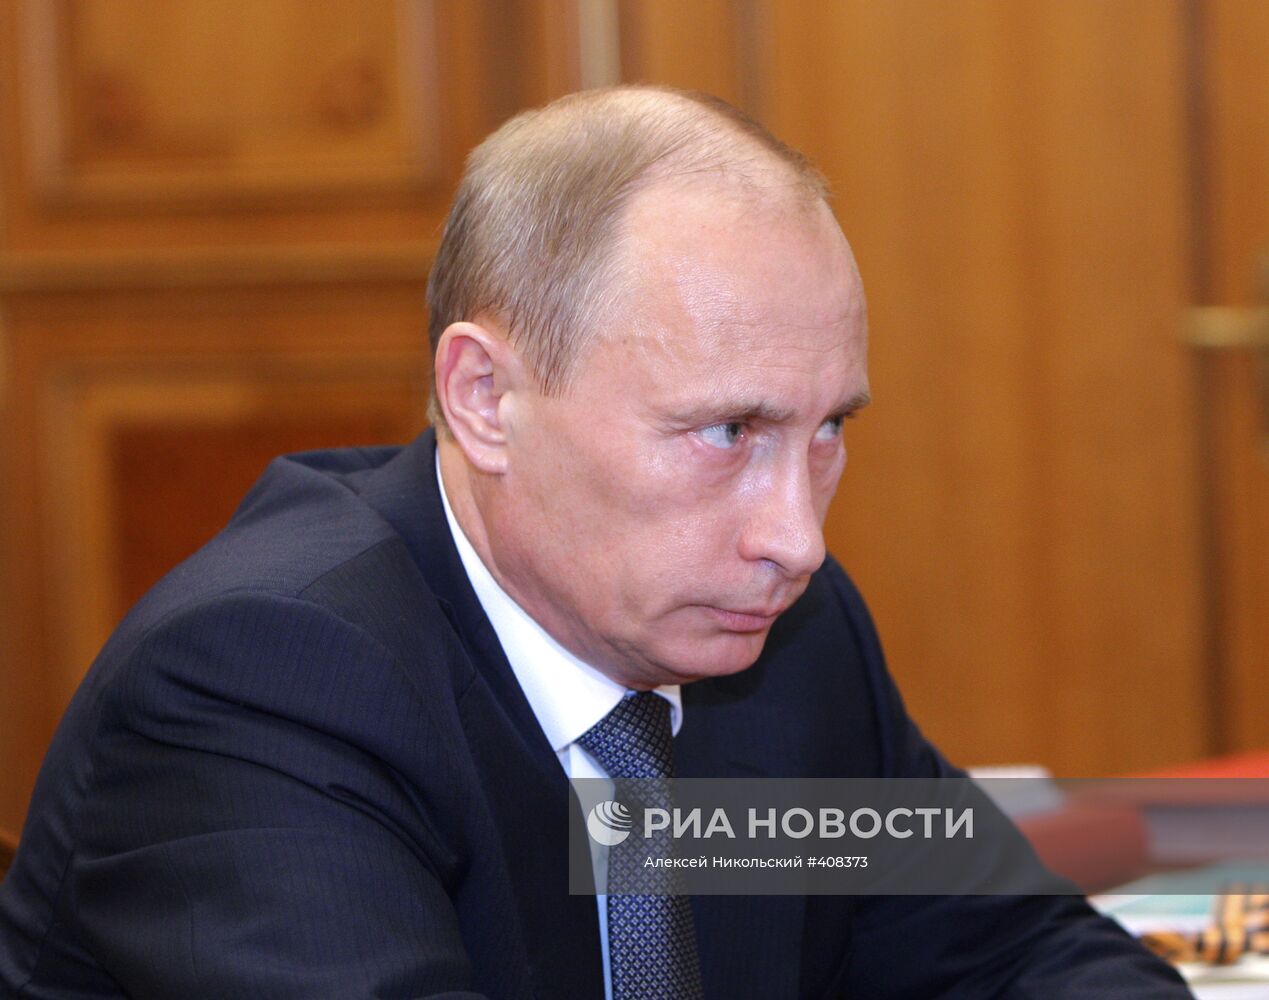 Владимир Путин провел встречу с Сергеем Ивановым